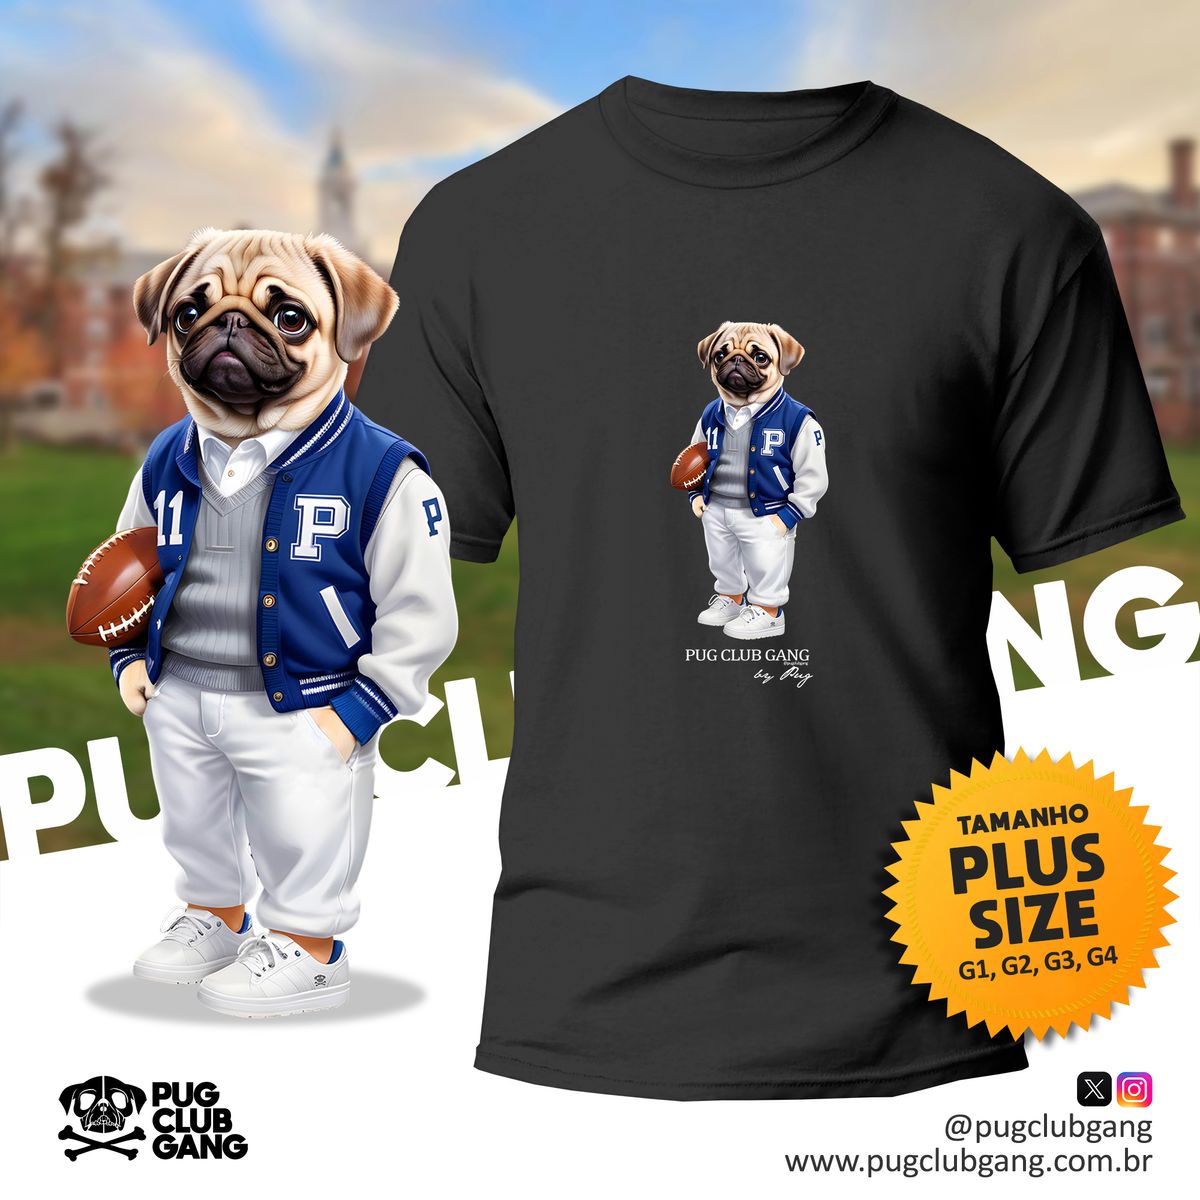 Nome do produto: Camiseta Pug - Universidade Pug - Plus Size